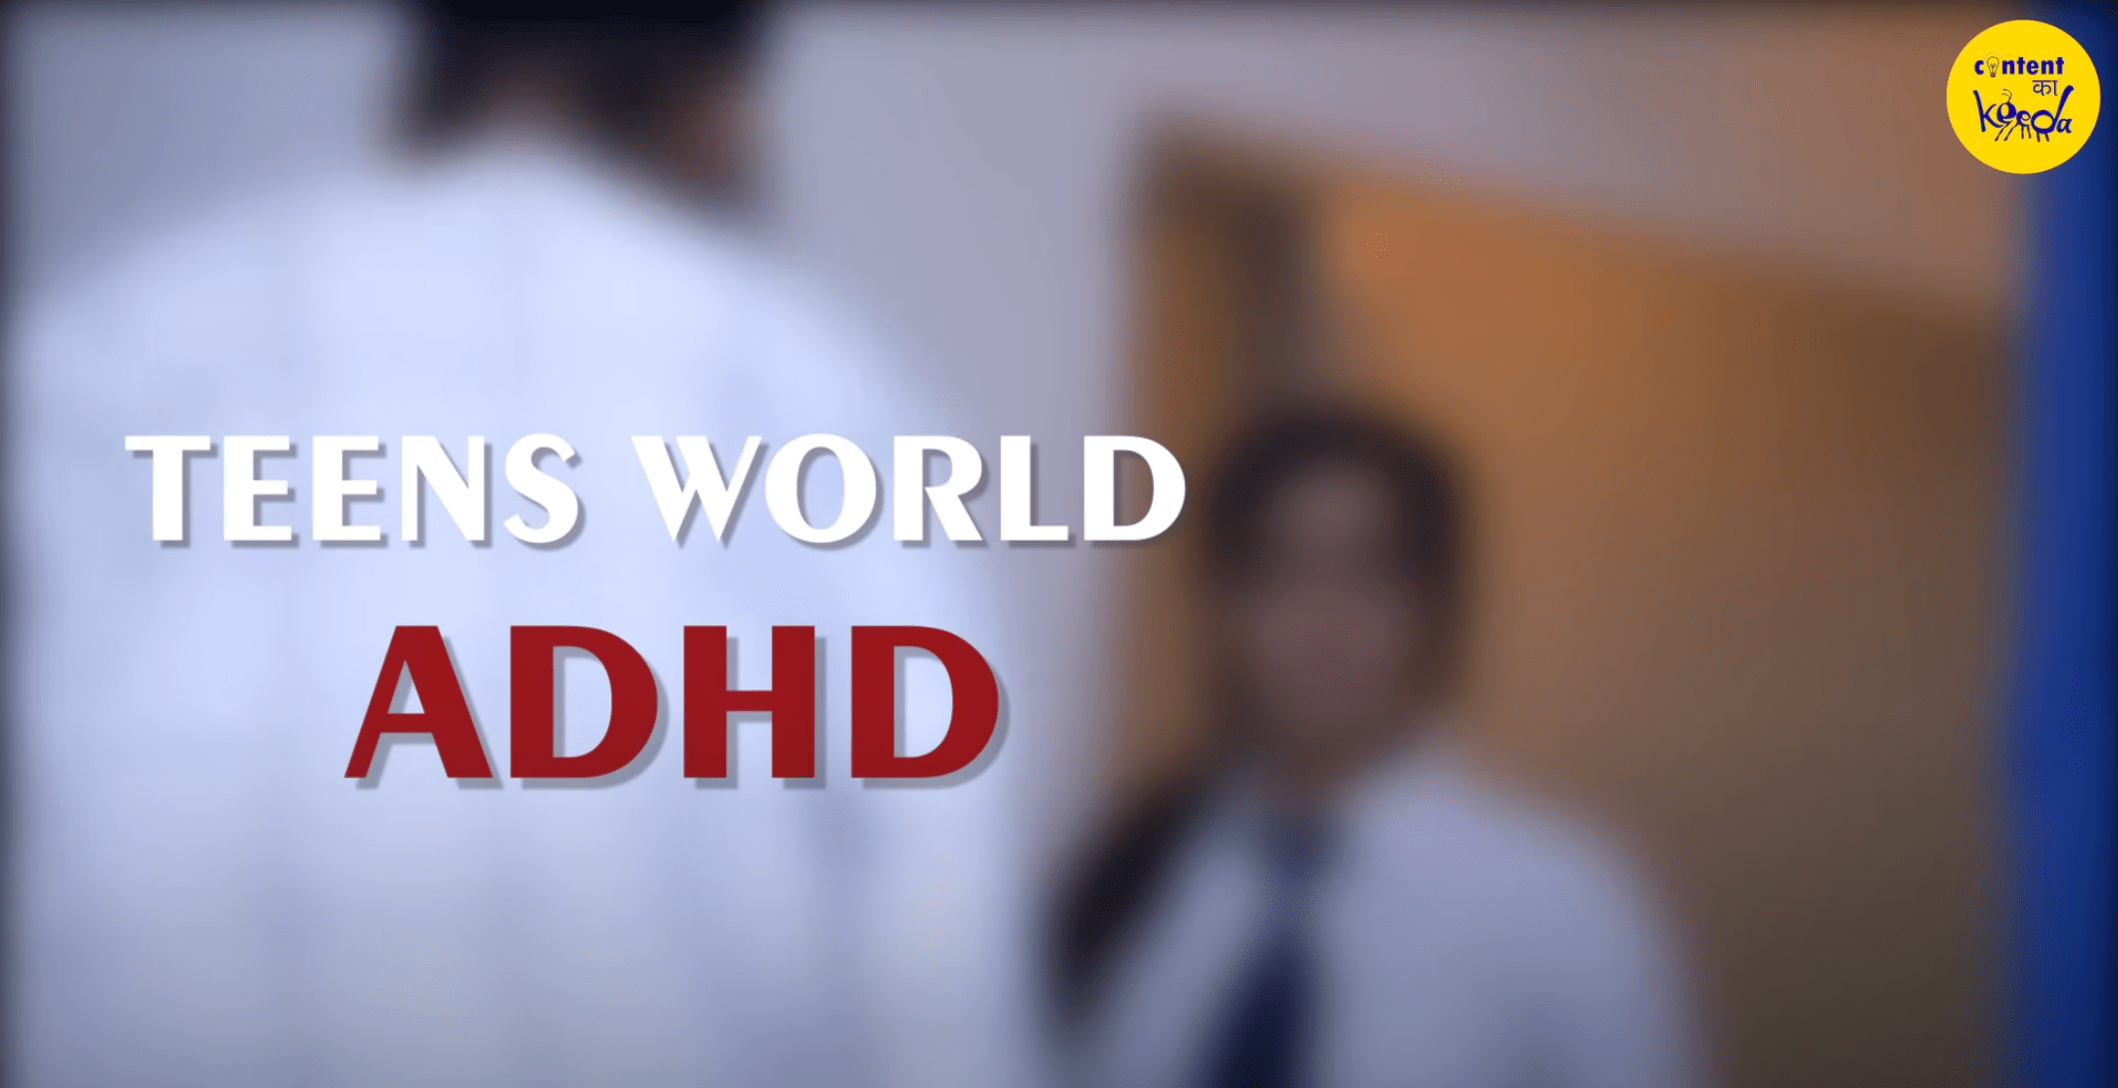 ADHD, mental, health, short, film, awareness, mental health campaign